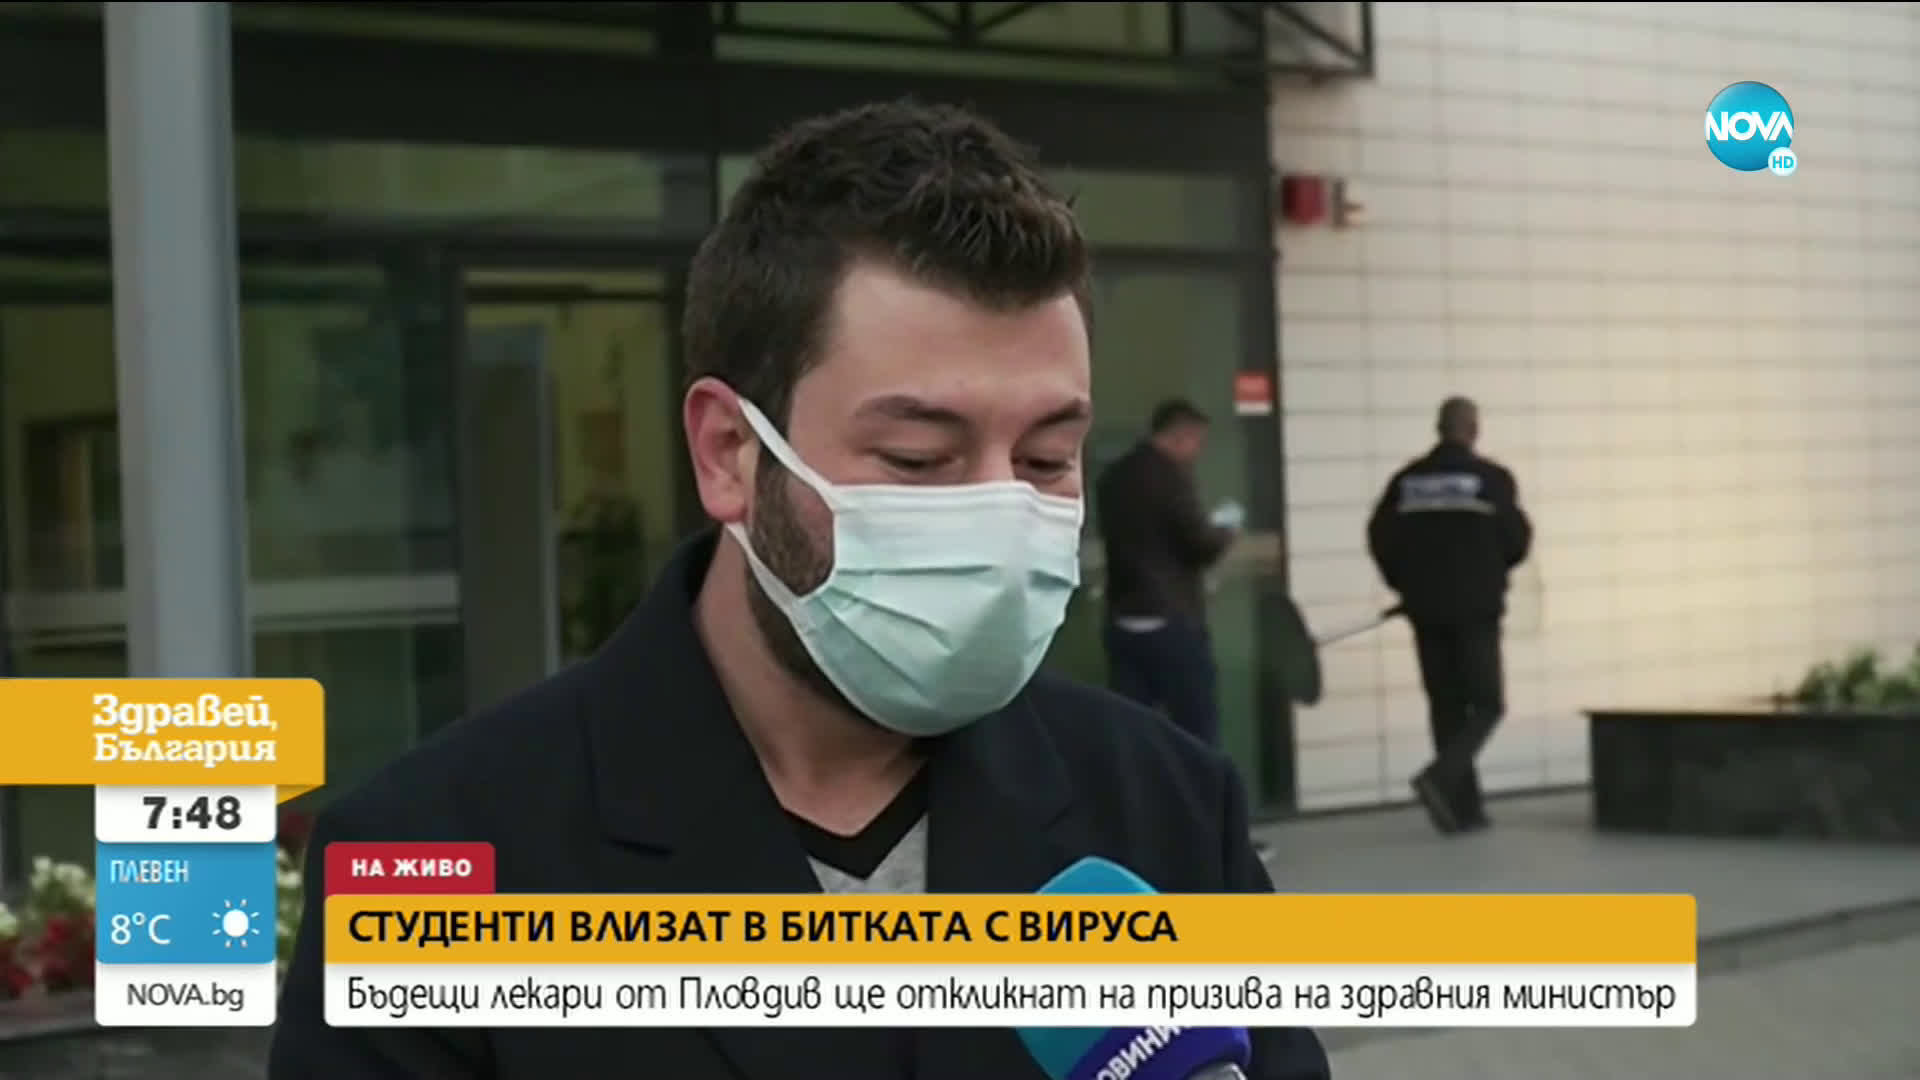 Студенти от Пловдив влизат в битката с вируса